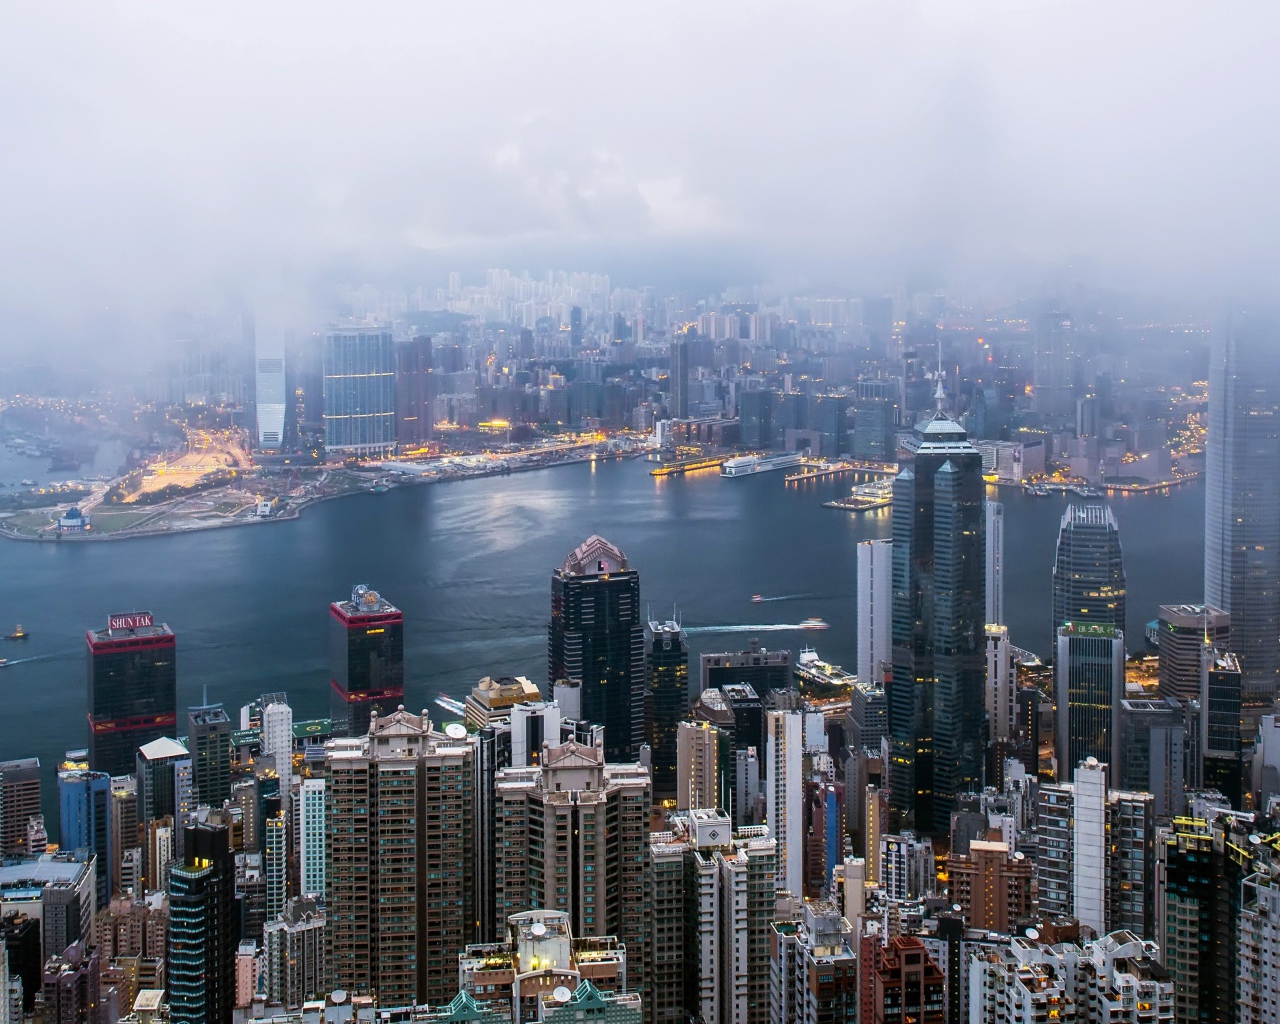 Hong Kong Panorama of the city